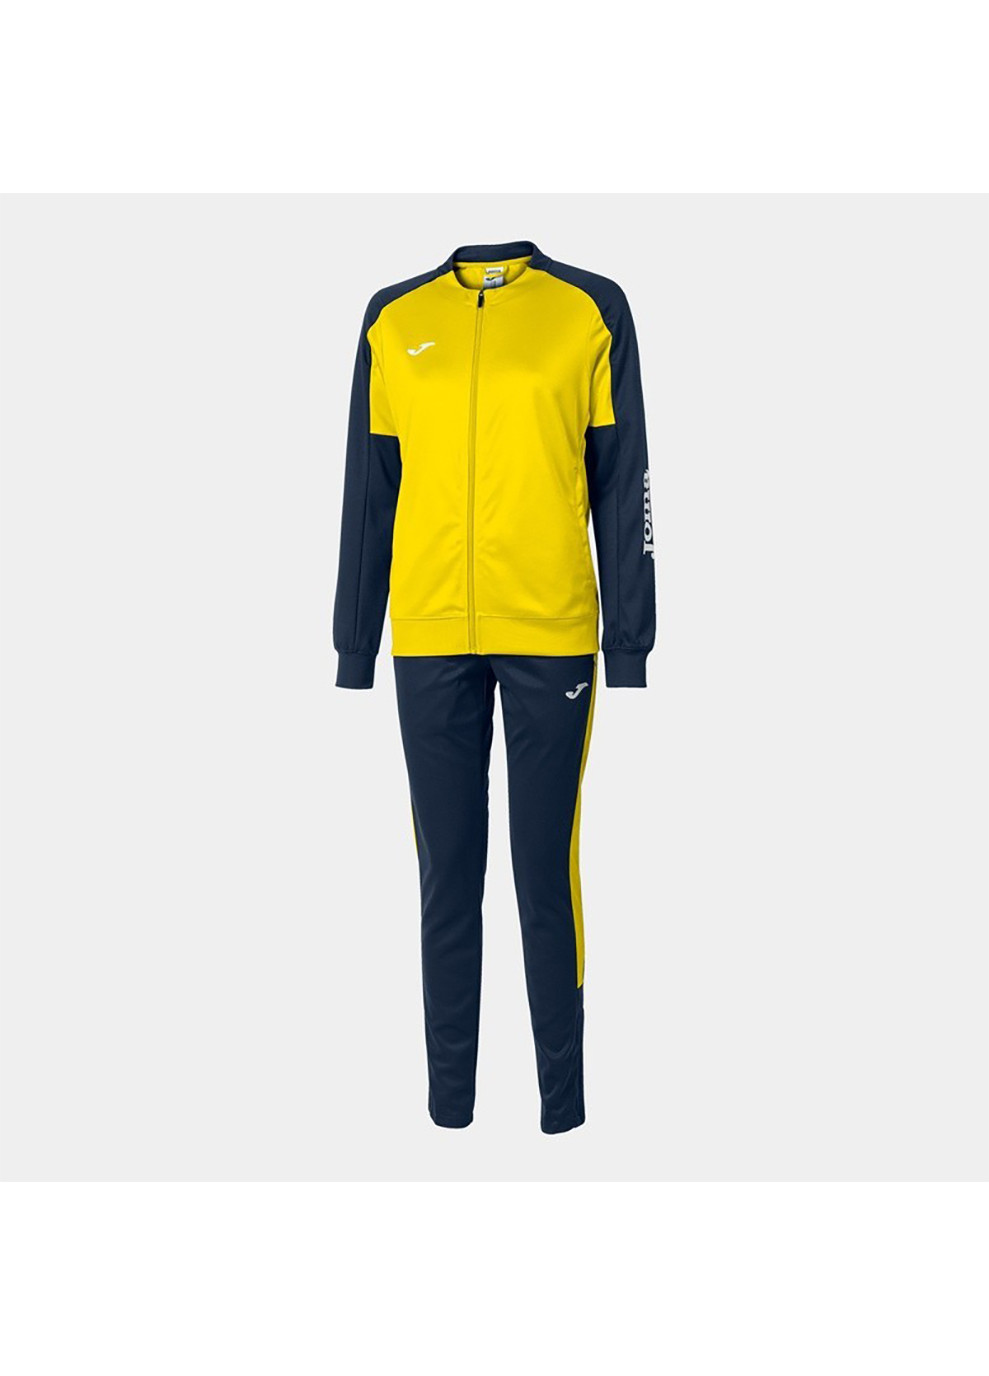 Жіночий спортивний костюм ECO CHAMPIONSHIP TRACKSUIT жовтий,синій Joma (260956013)